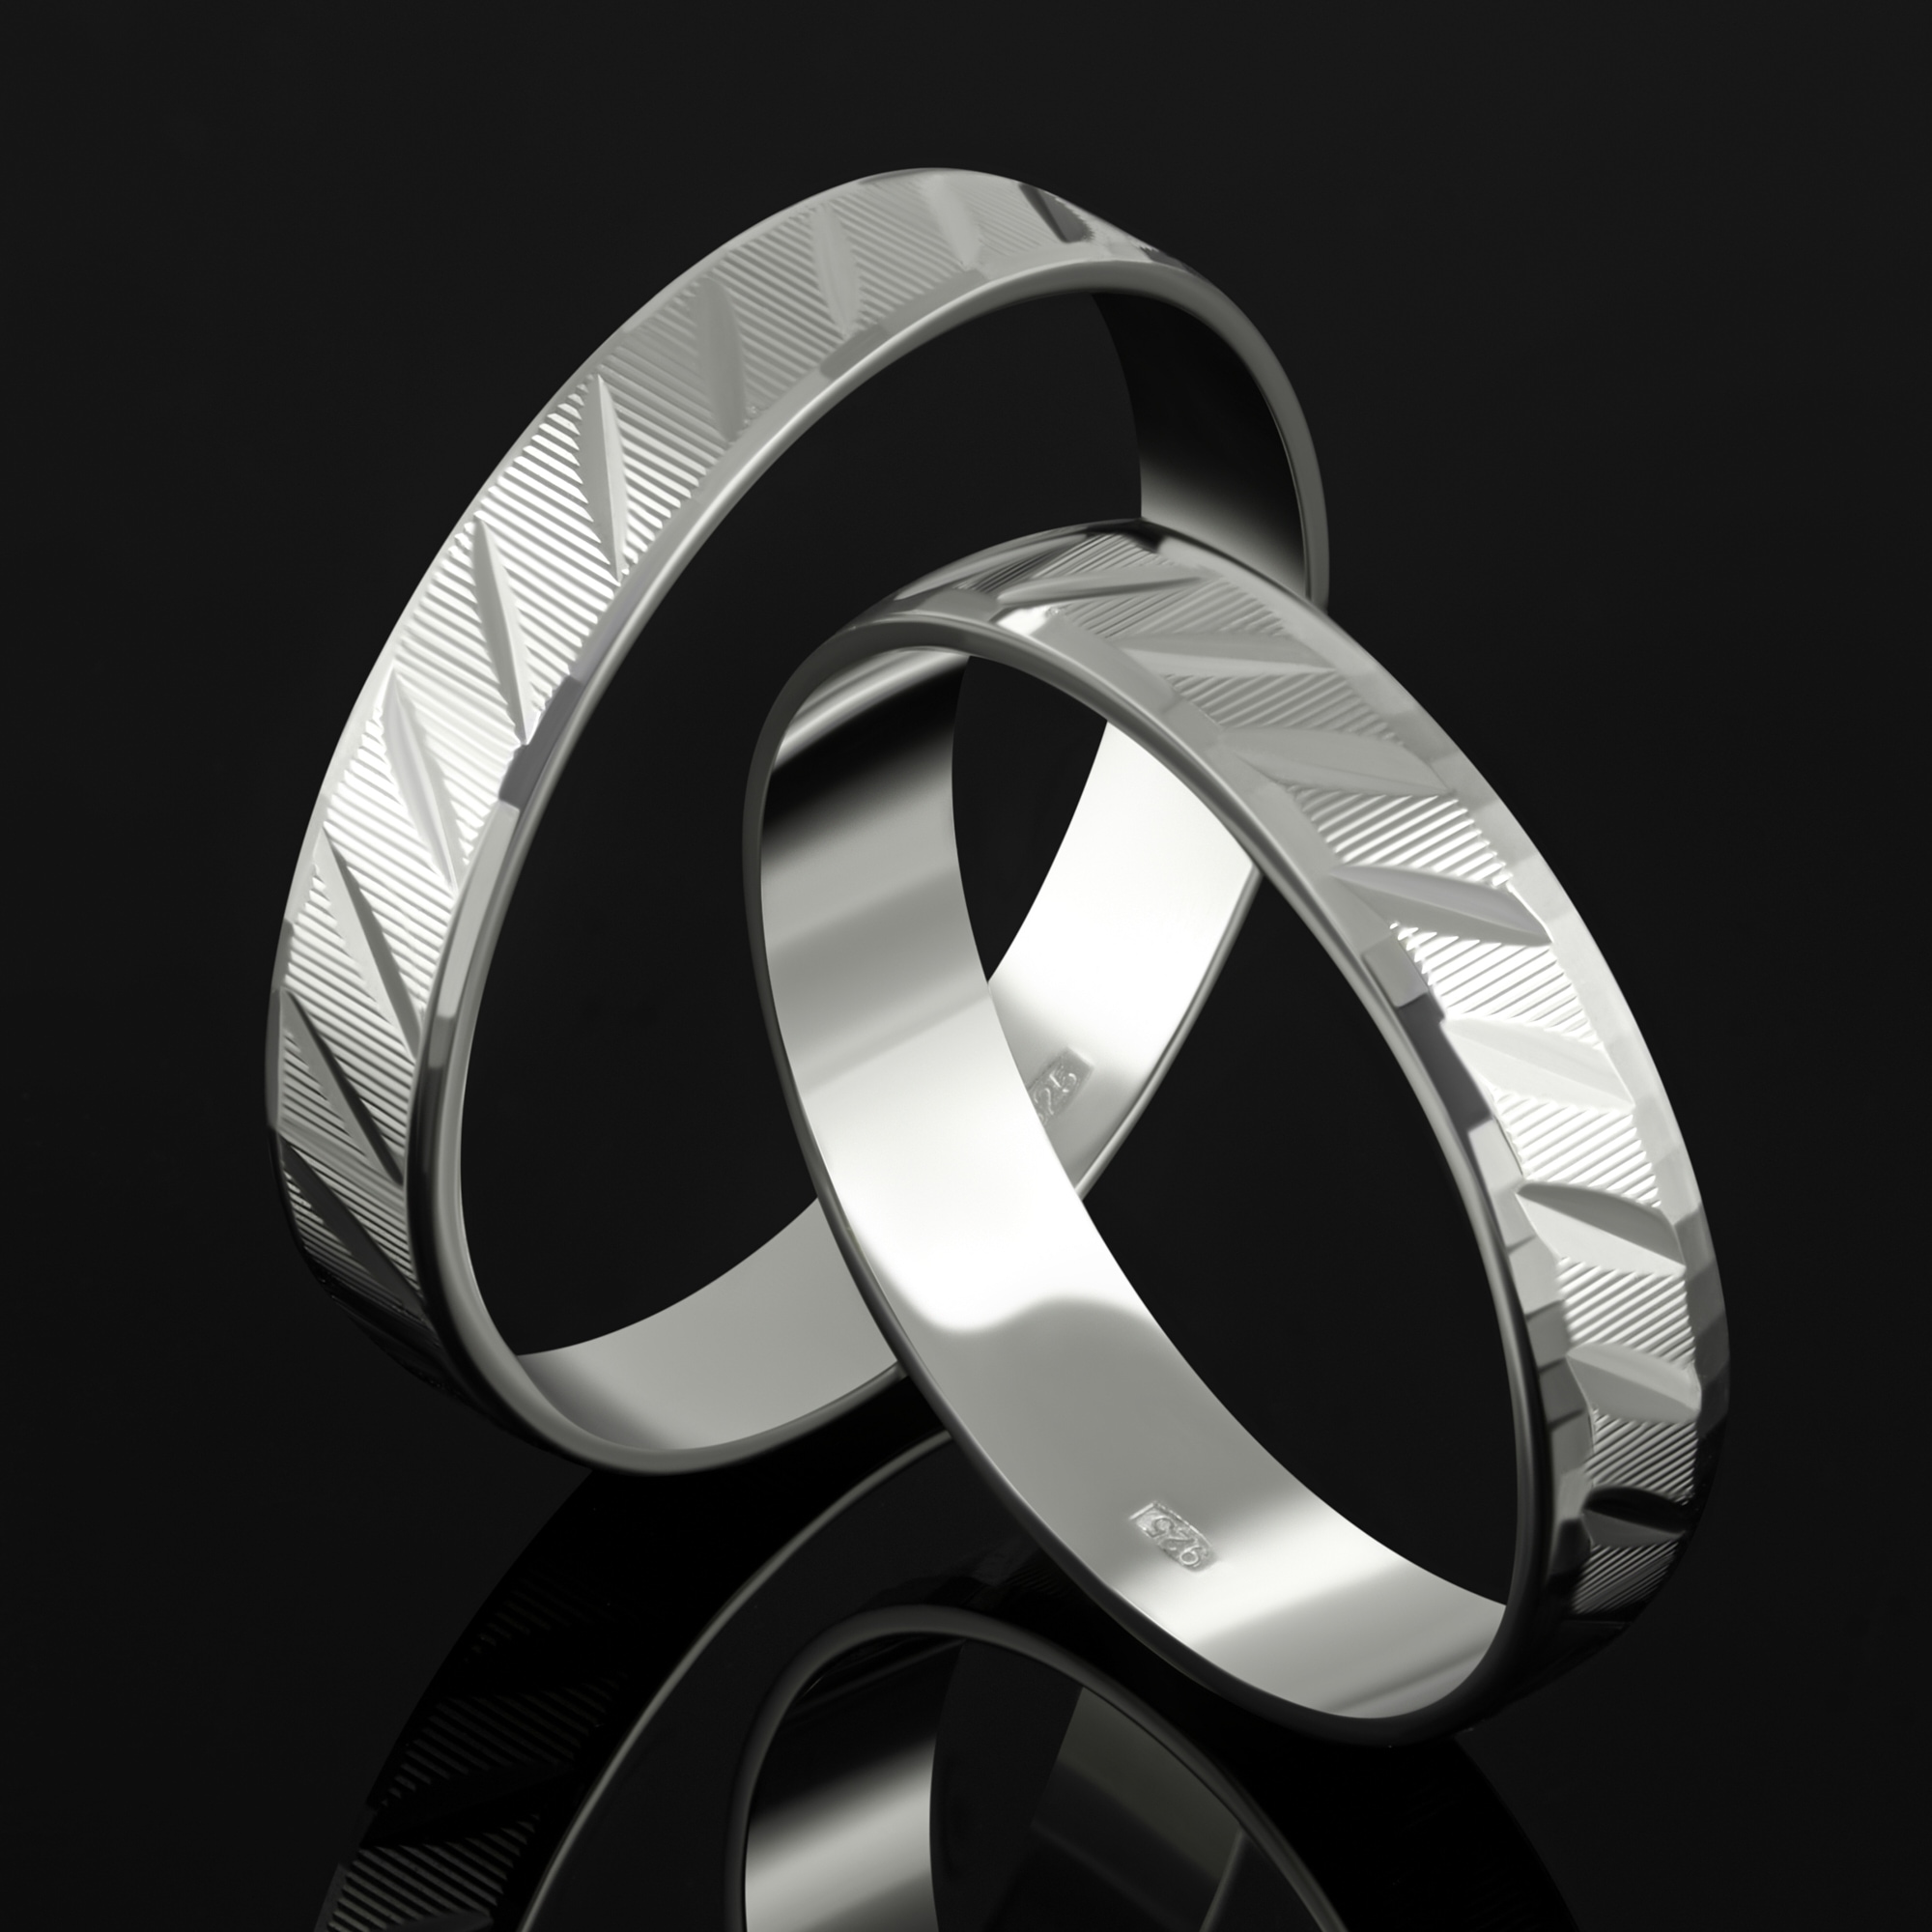 Серебряное кольцо обручальное Золотая подкова ЯВ821423-40/3С, размеры от 16 до 22.5